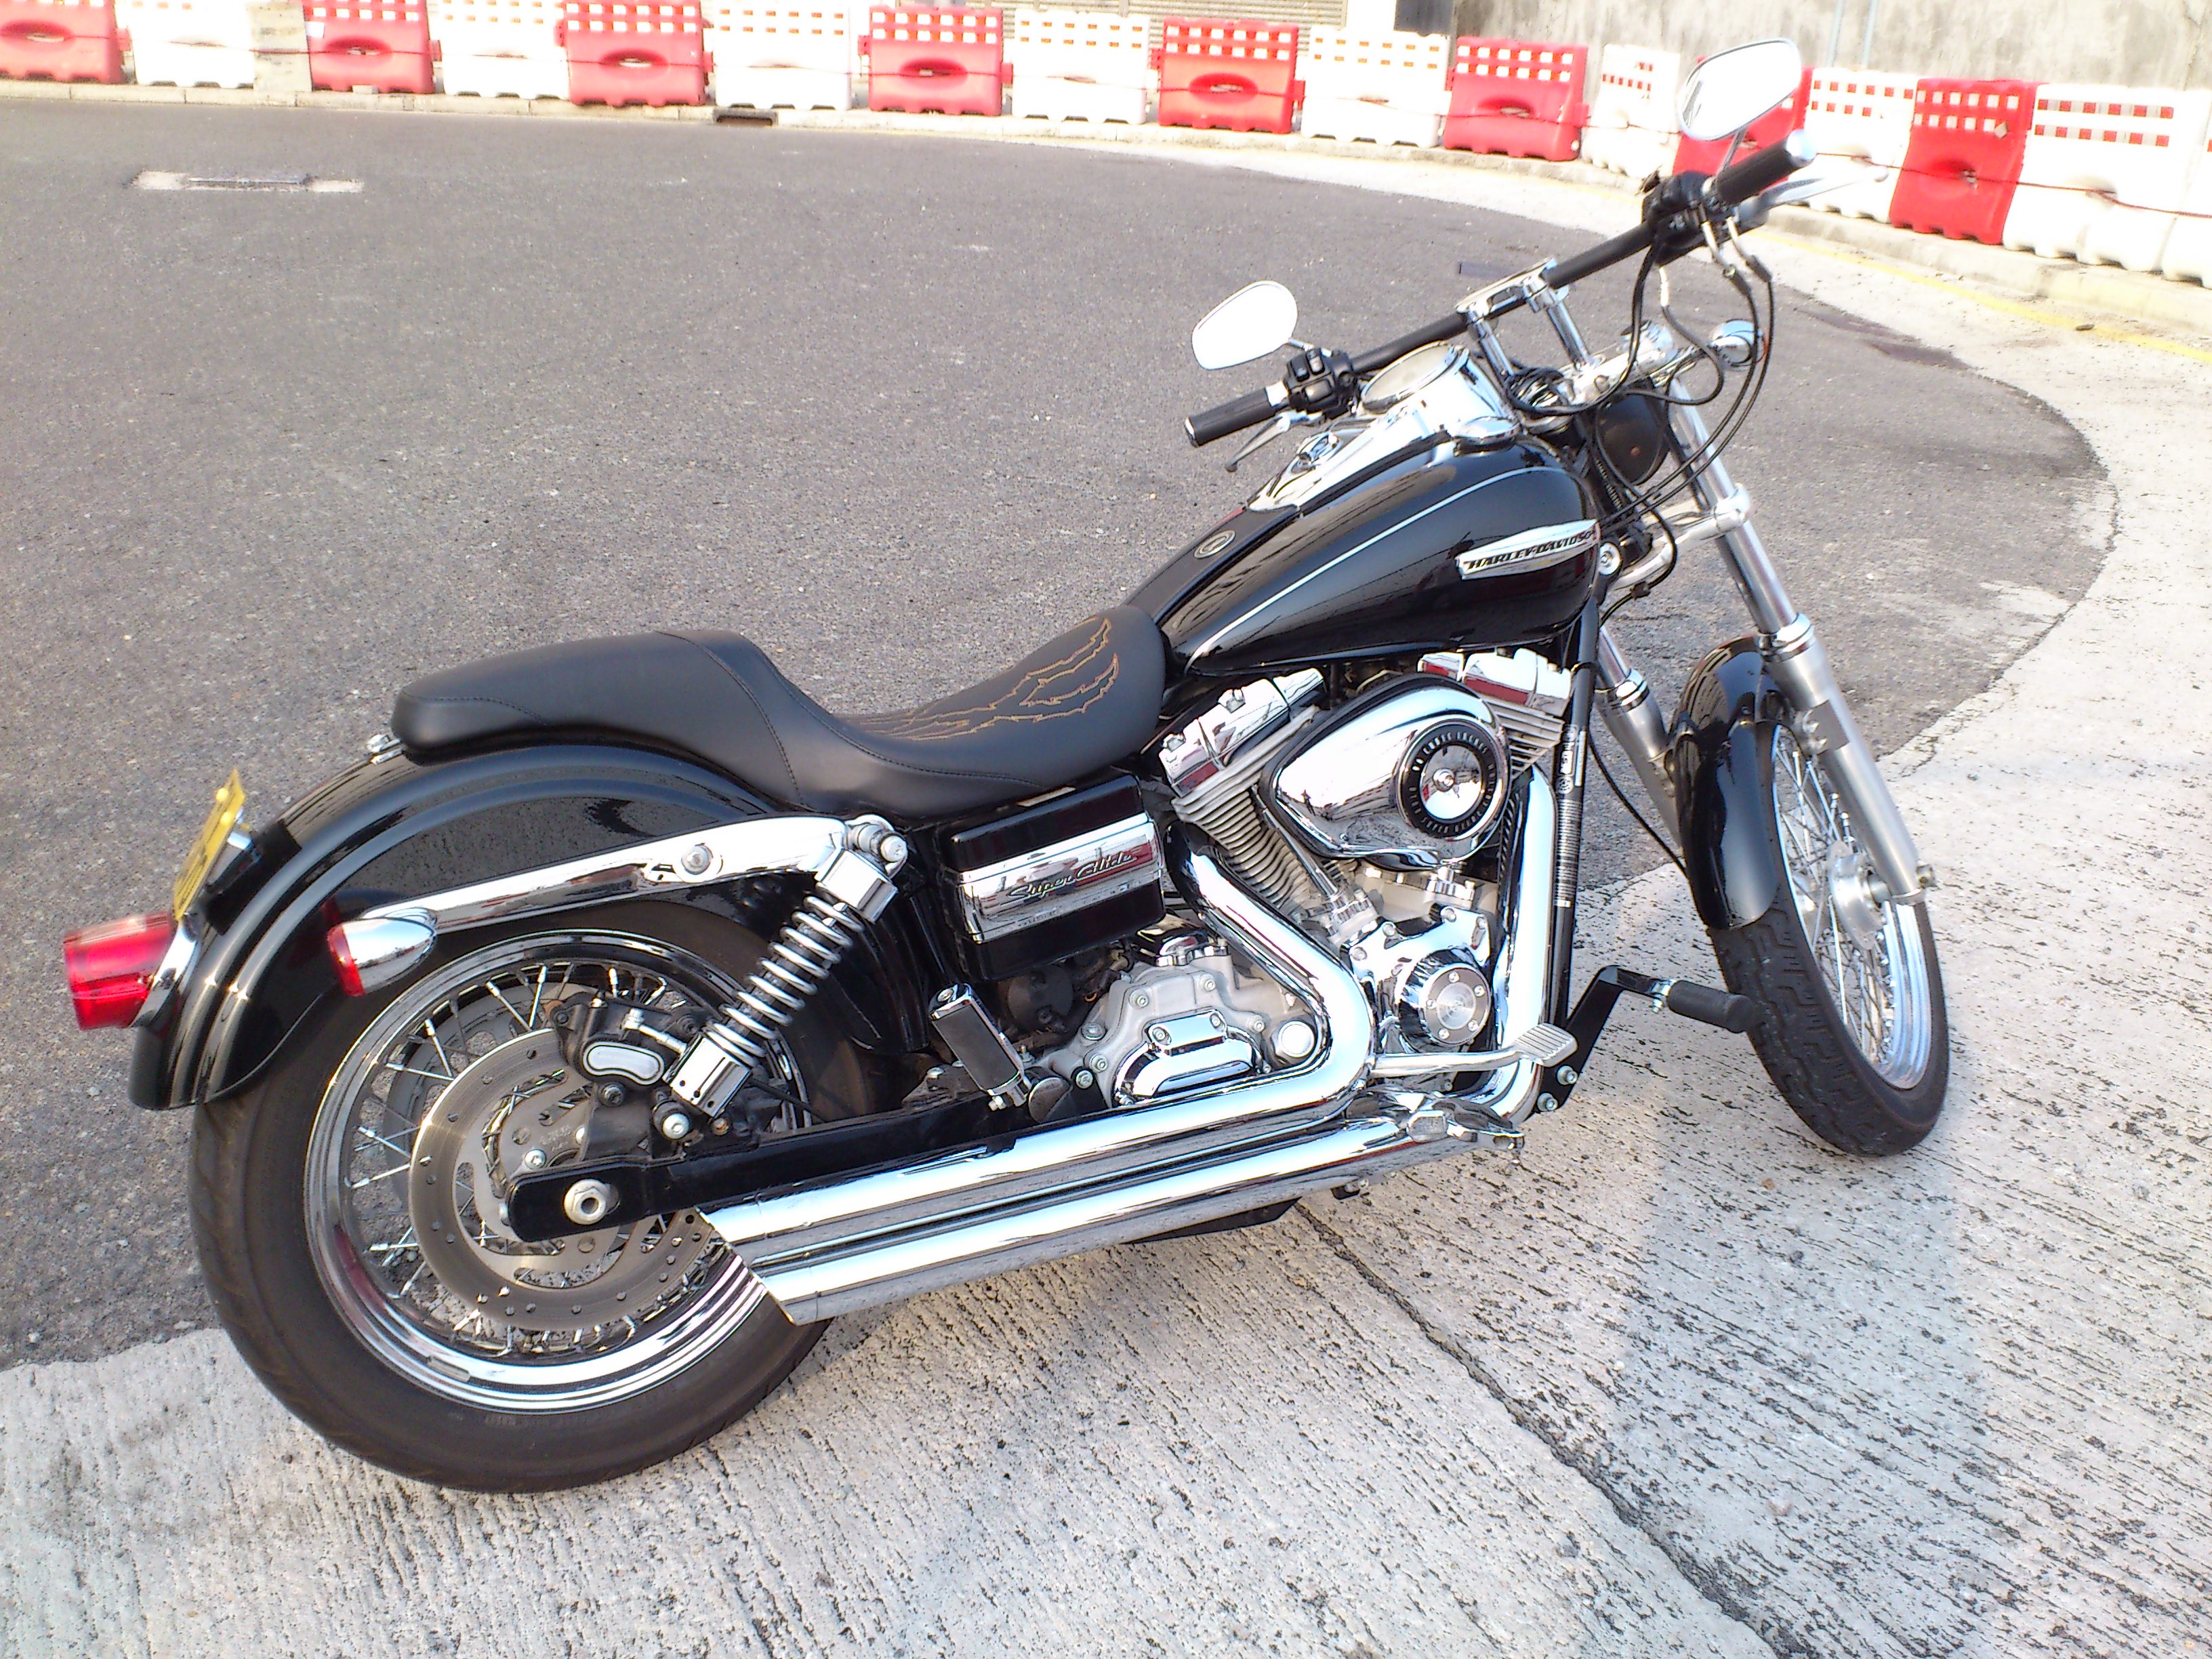 2009 Harley Davidson Dyna Super Glide Off 67 Medpharmres Com